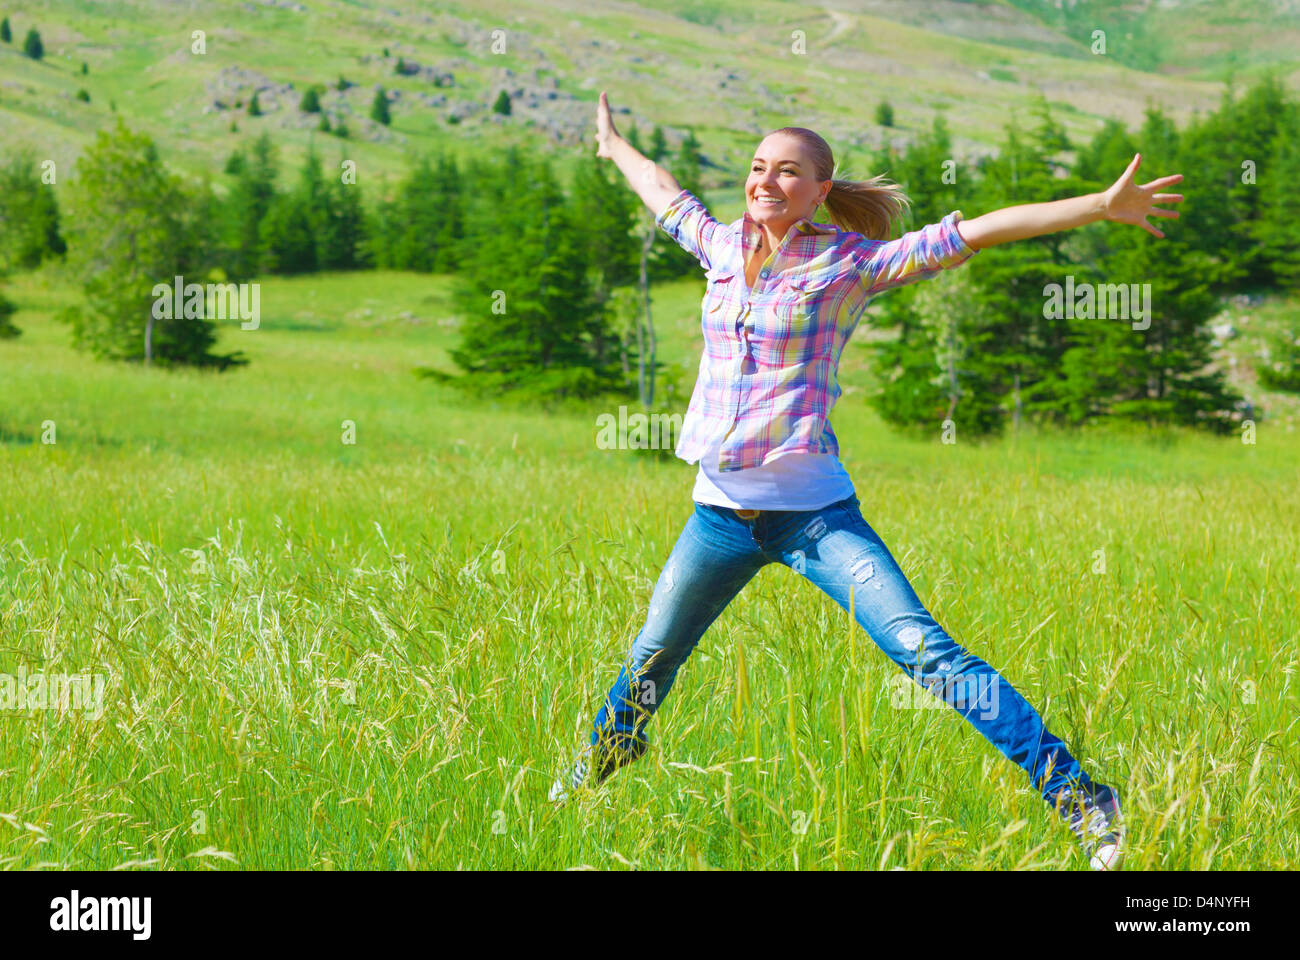 Felice ragazza di saltare sul campo, godendo di aria fresca e la molla verde erba, la libertà e la felicità concept Foto Stock